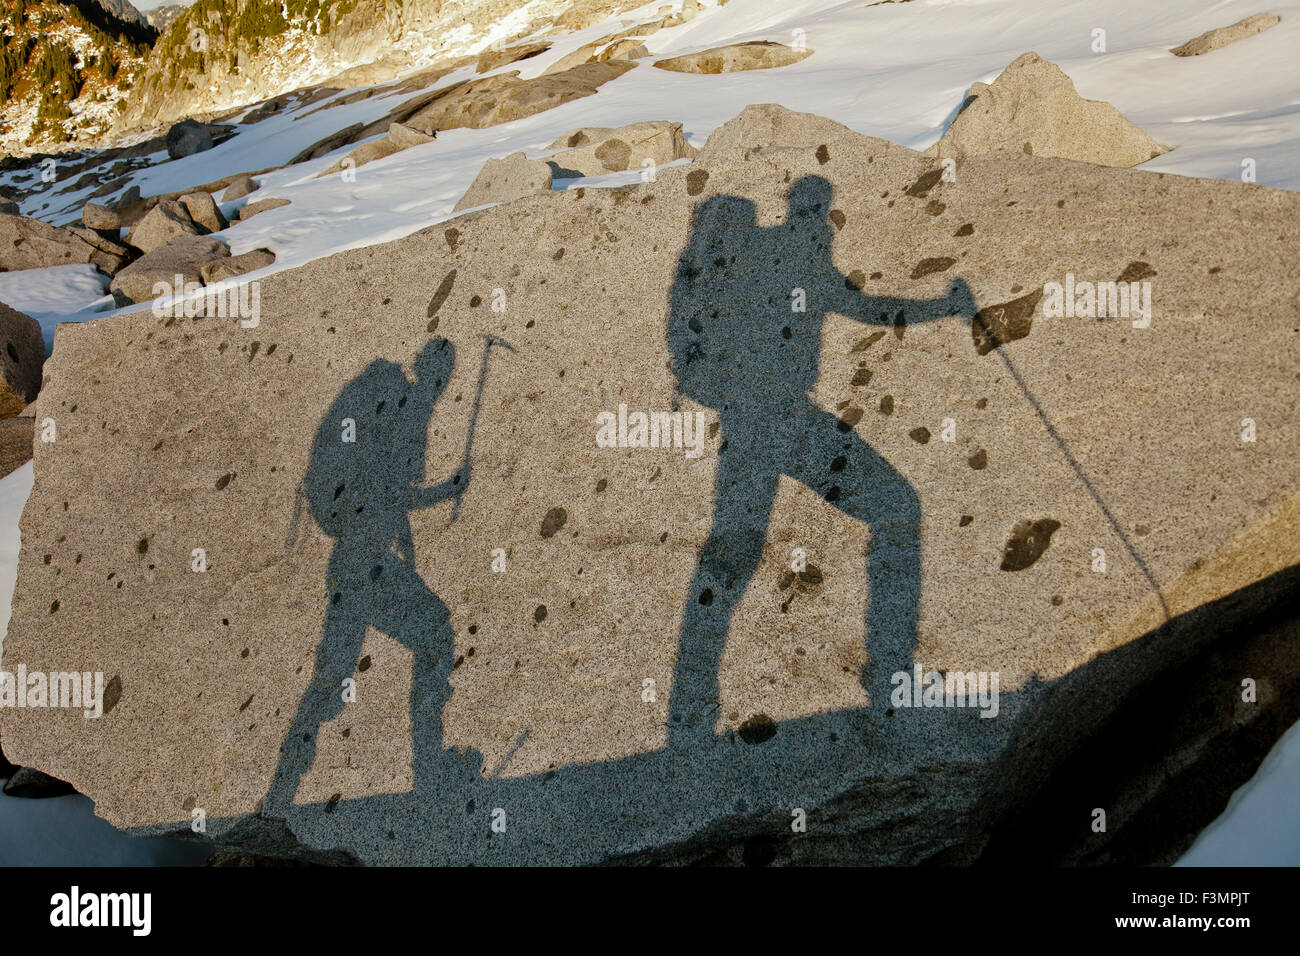 Las sombras de dos mochileros en una gran roca. Foto de stock